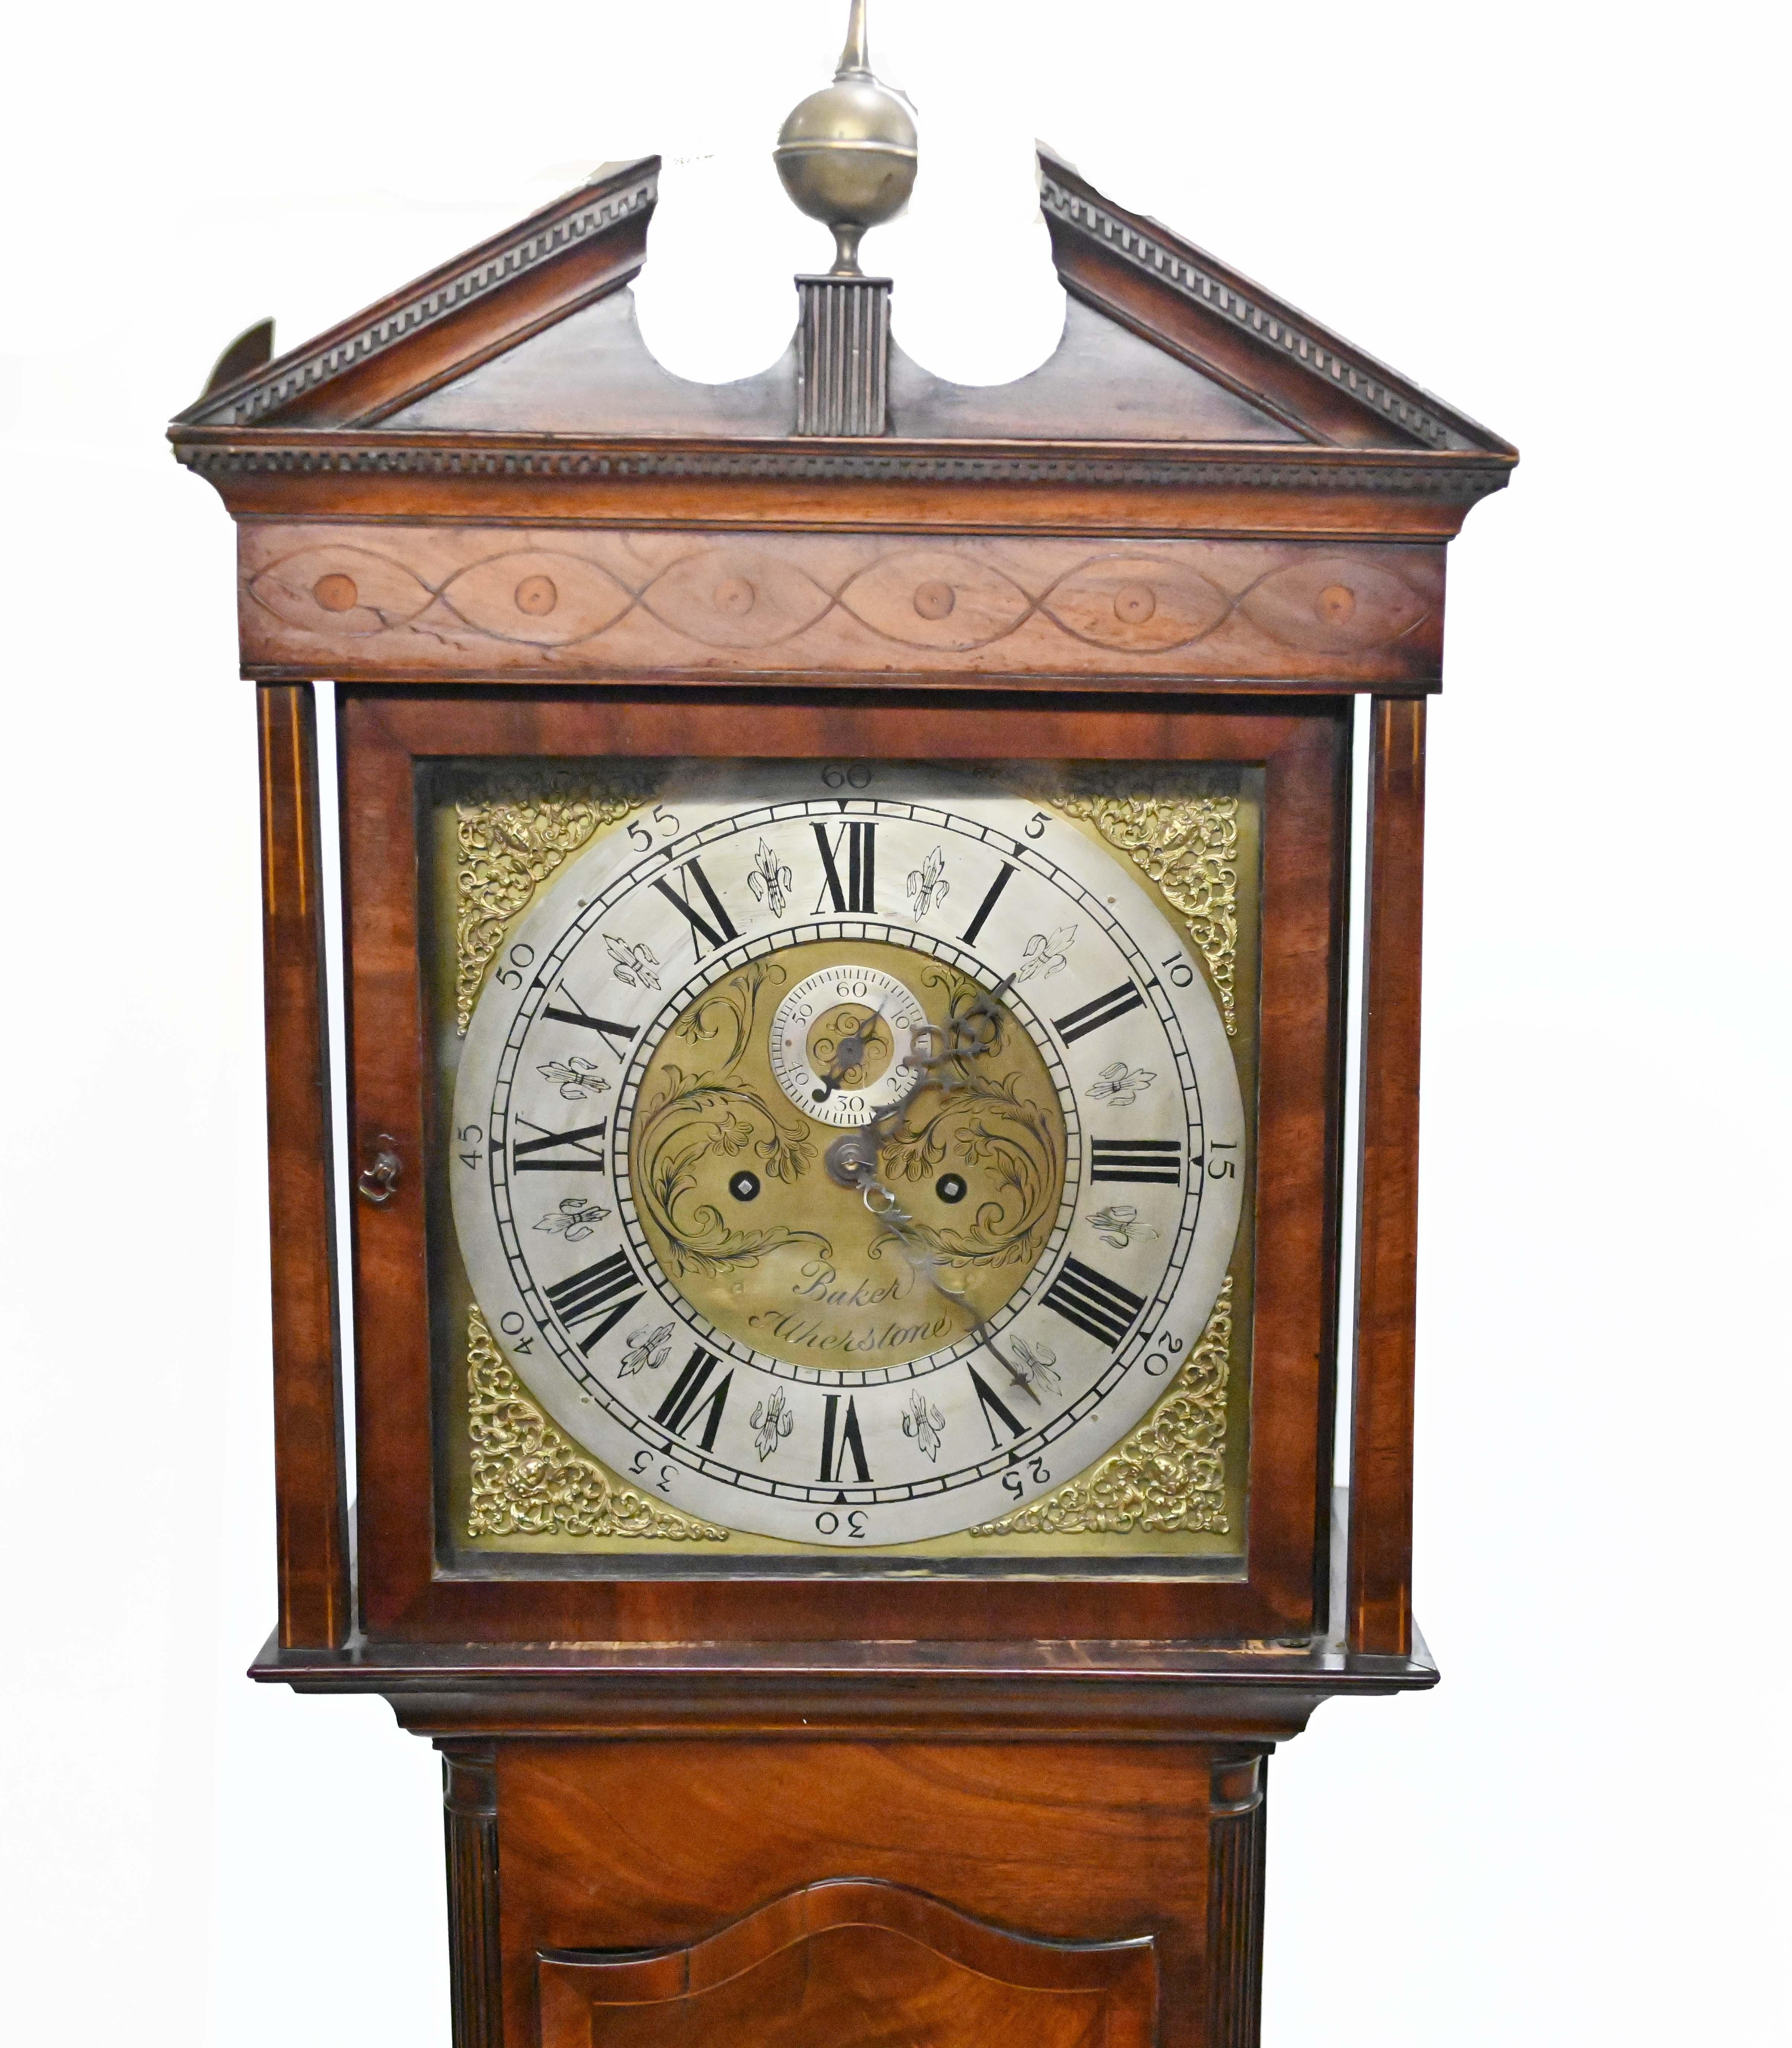 Horloge grand-père victorienne raffinée en acajou
Le cadran de l'horloge en laiton porte l'inscription Baker Atherstone, qui aurait été le fabricant d'origine.
En parfait état de marche, avec un fronton arqué.
Circva 1840 sur cette grande pièce